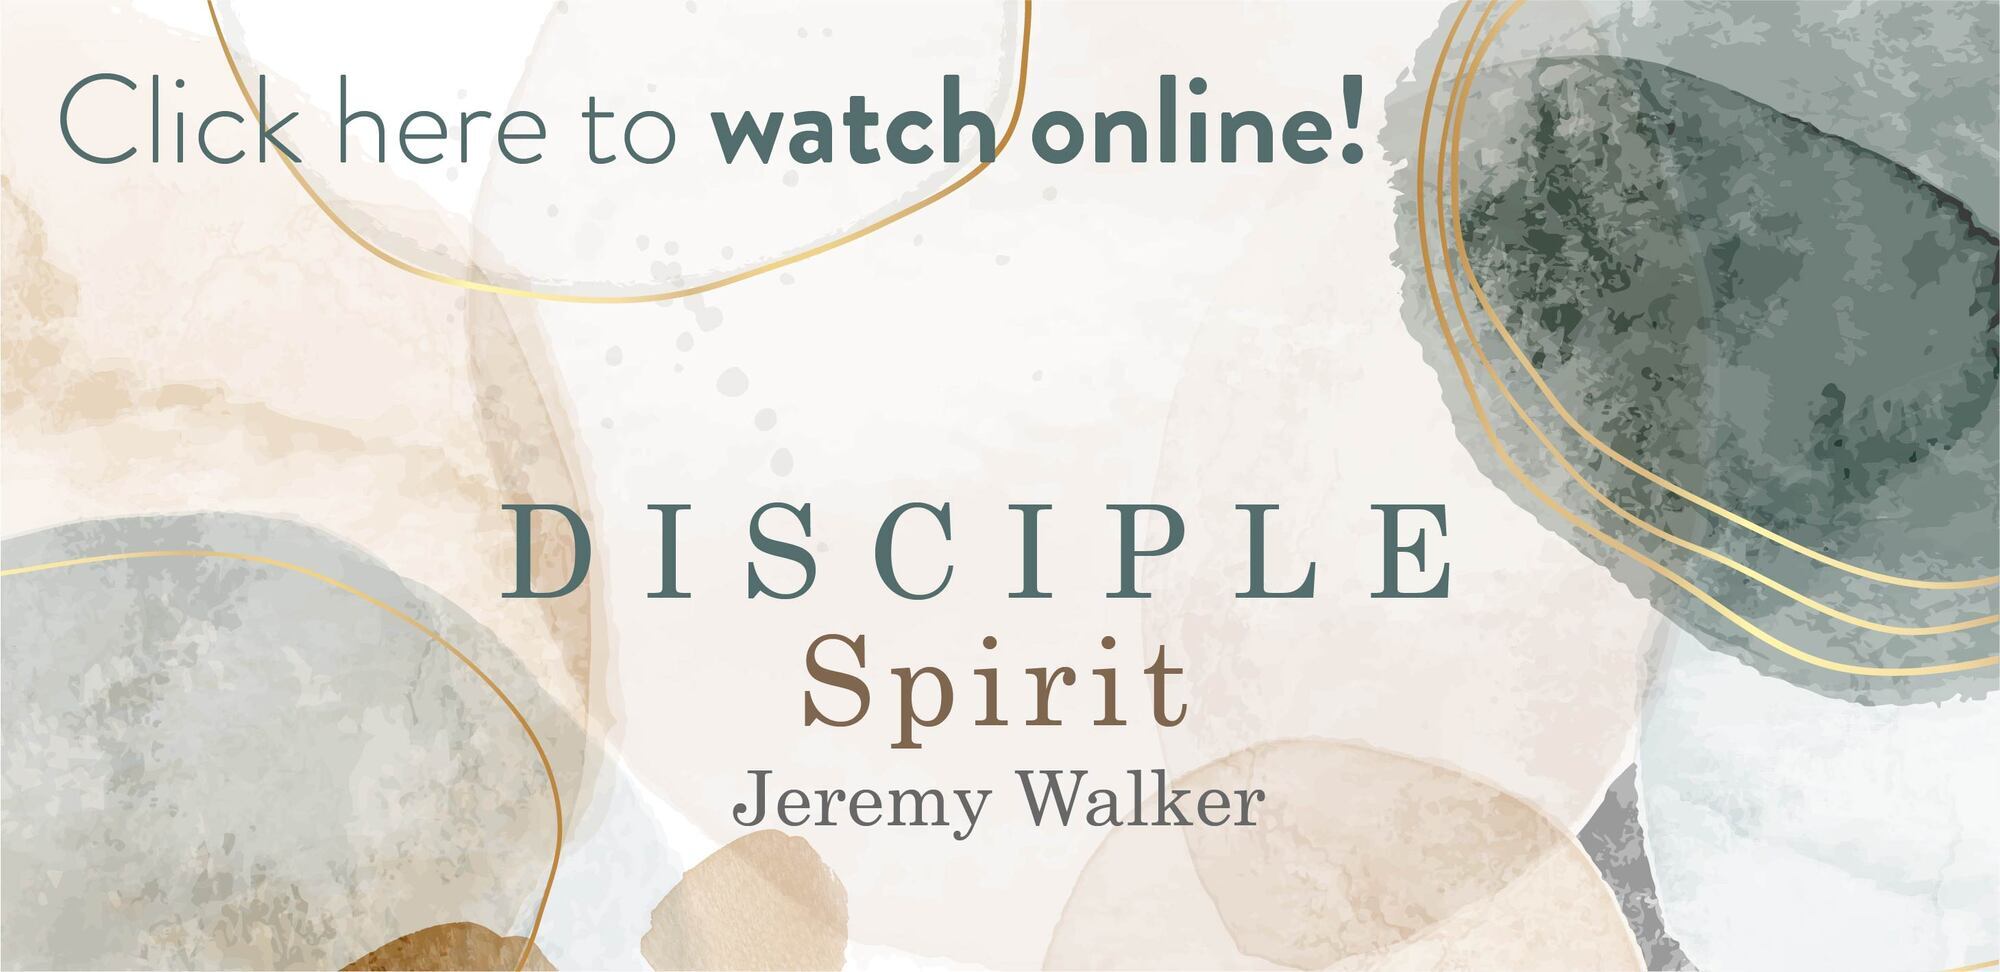 DISCIPLE Spirit